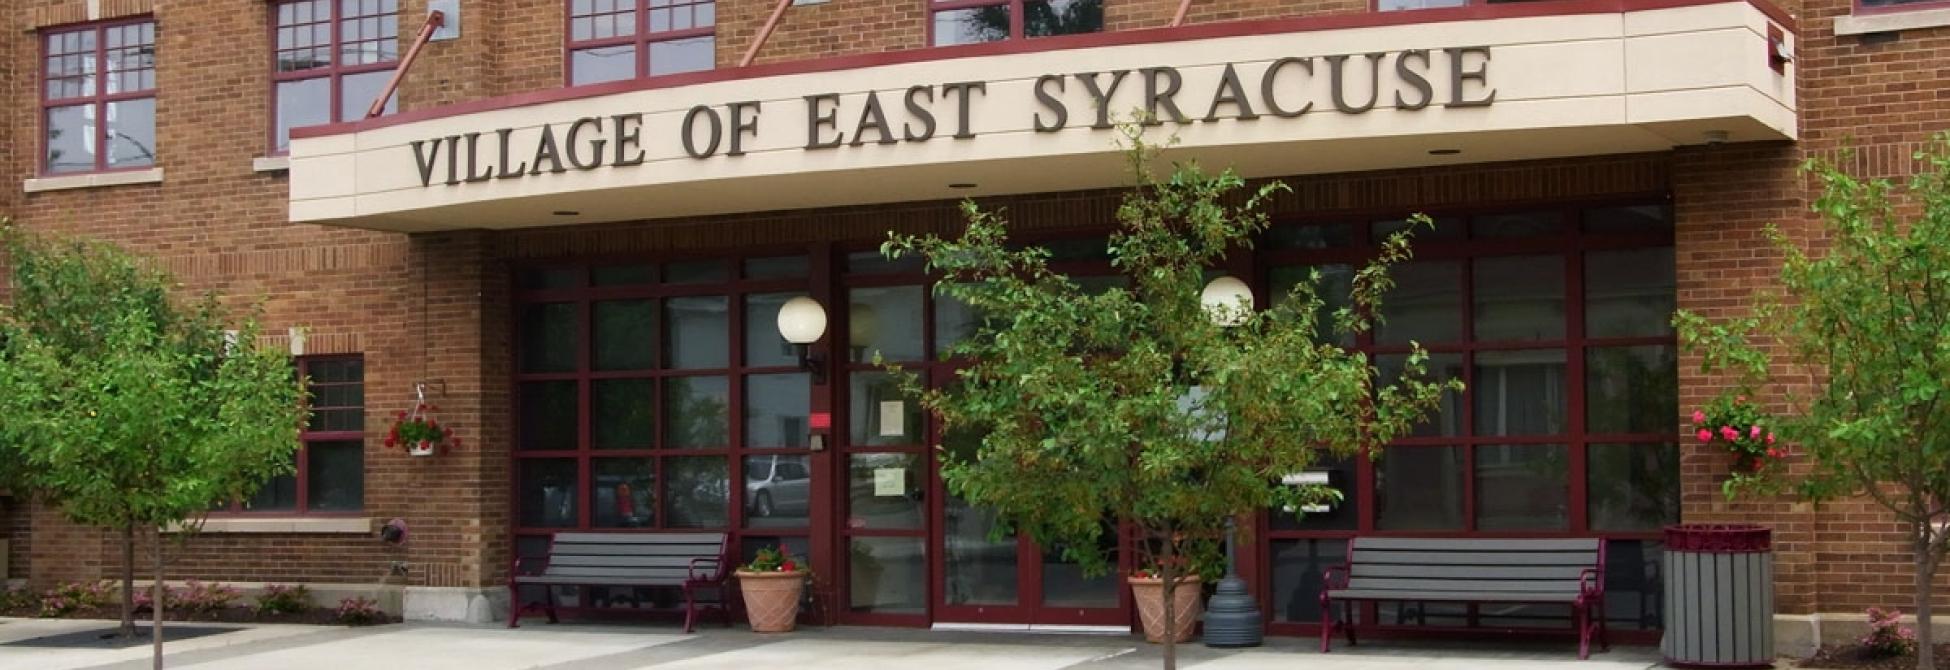 Village of East Syracuse